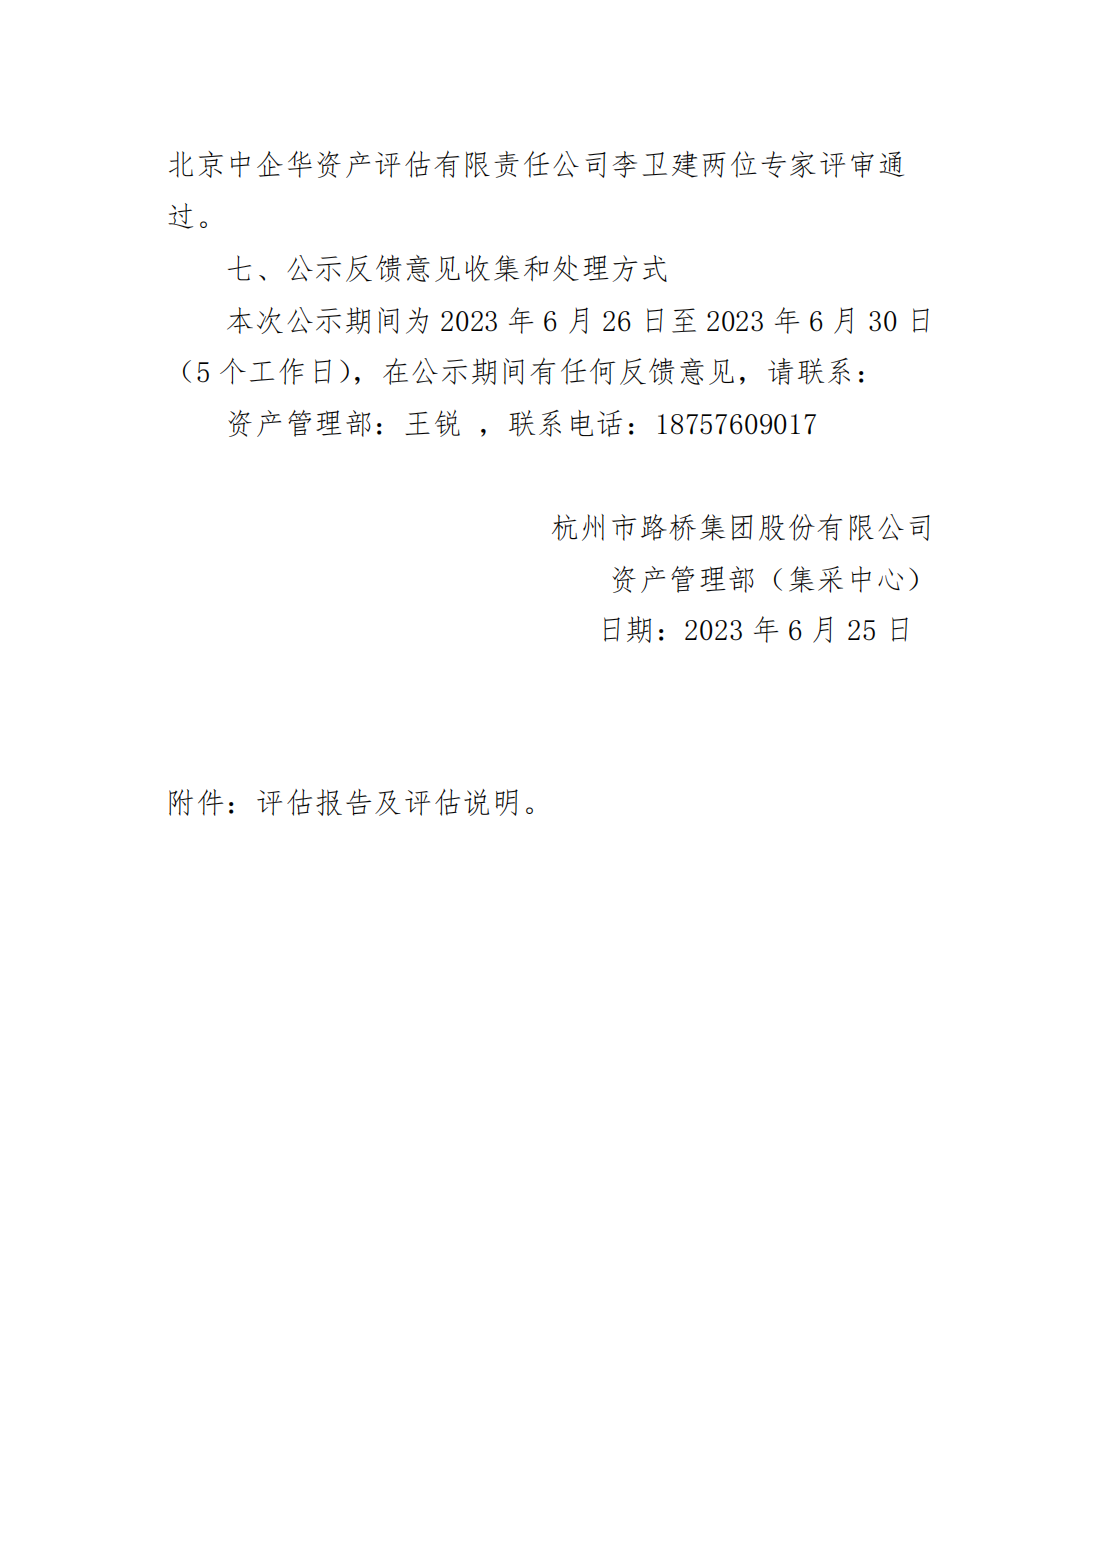 关于杭州市路桥集团股份有限公司拟处置单项资产残余价值资产评估项目的公示_01.png